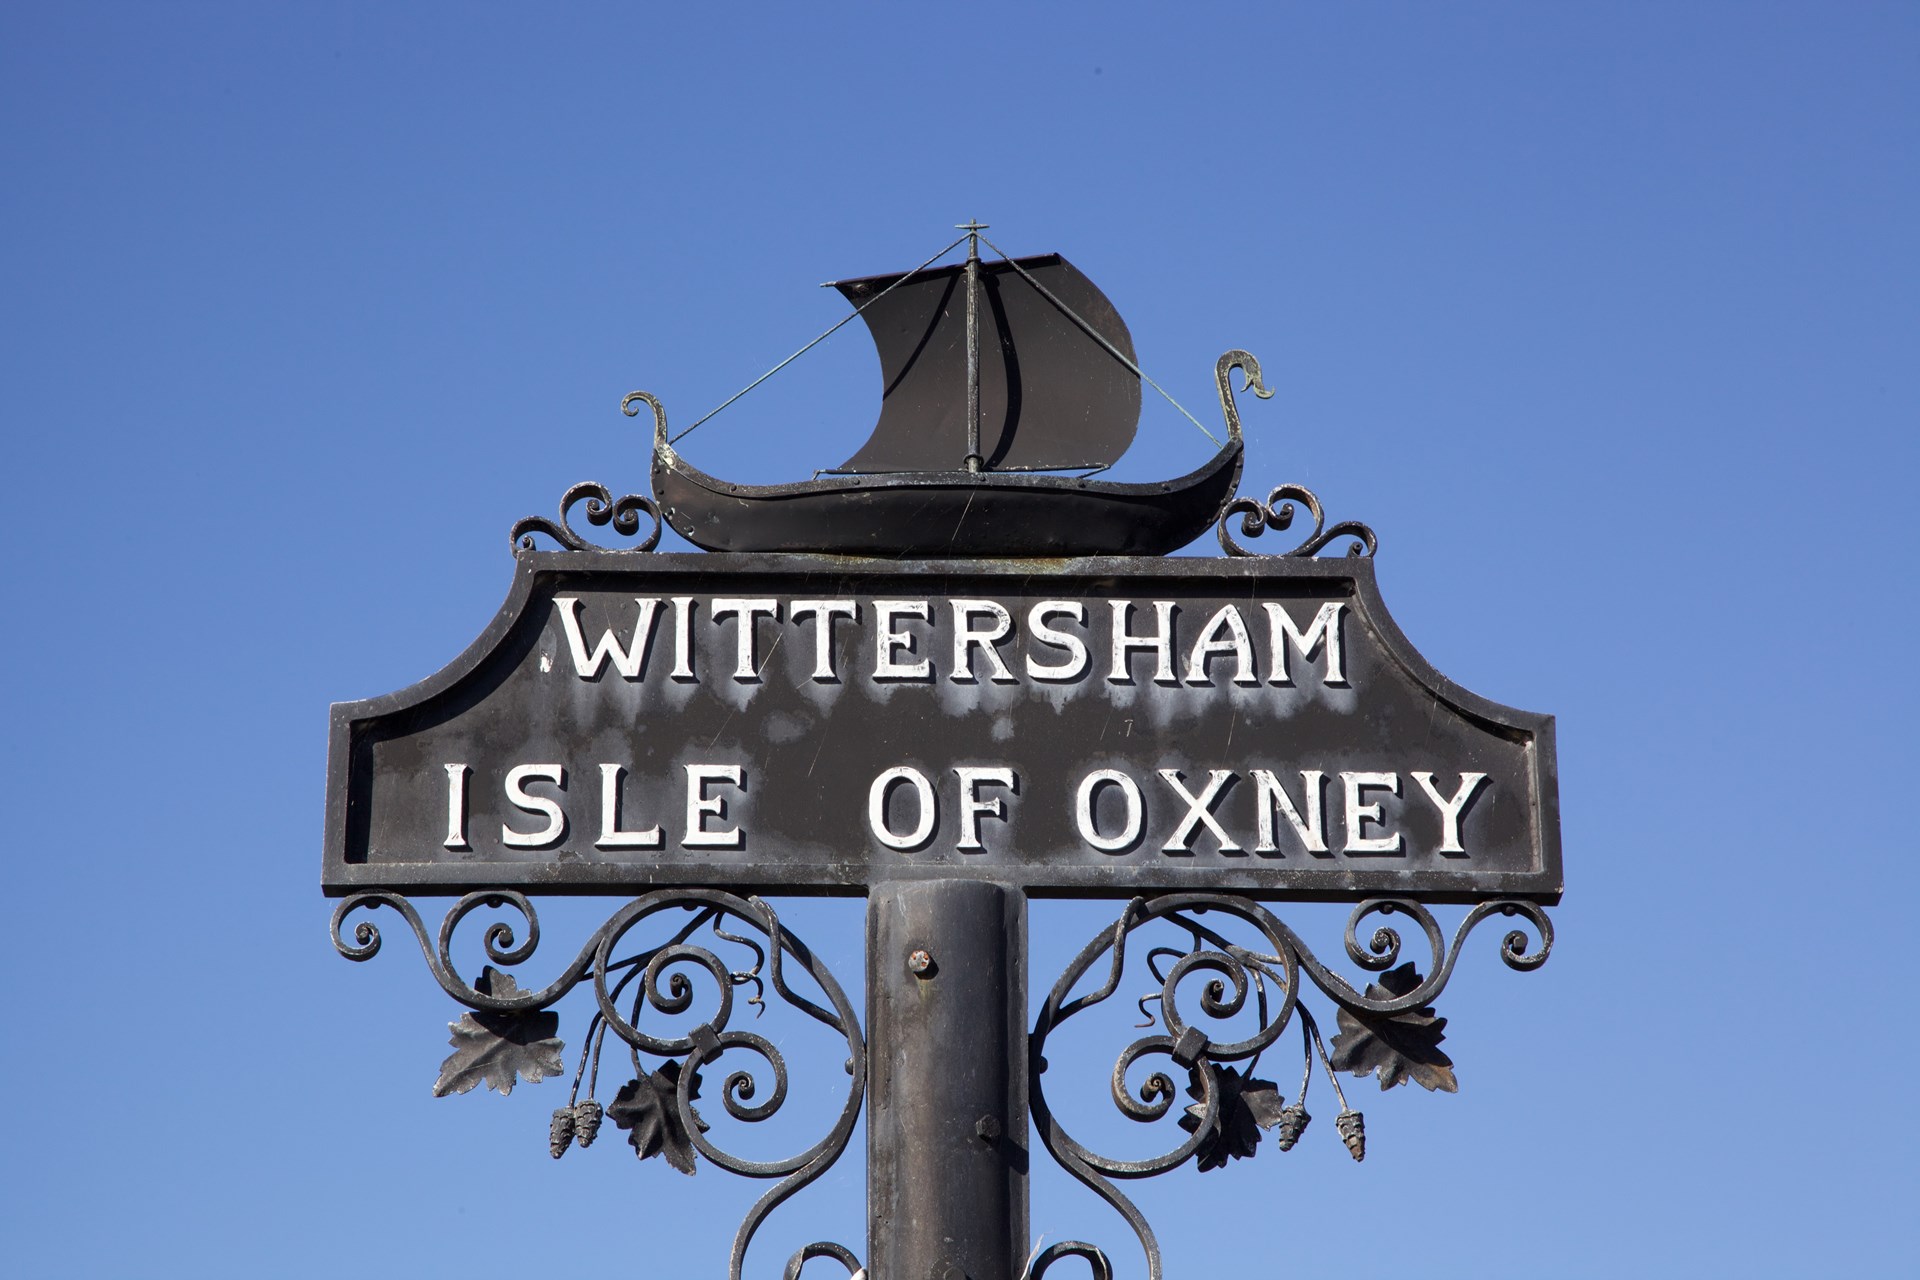 Wittersham, Isle of Oxney